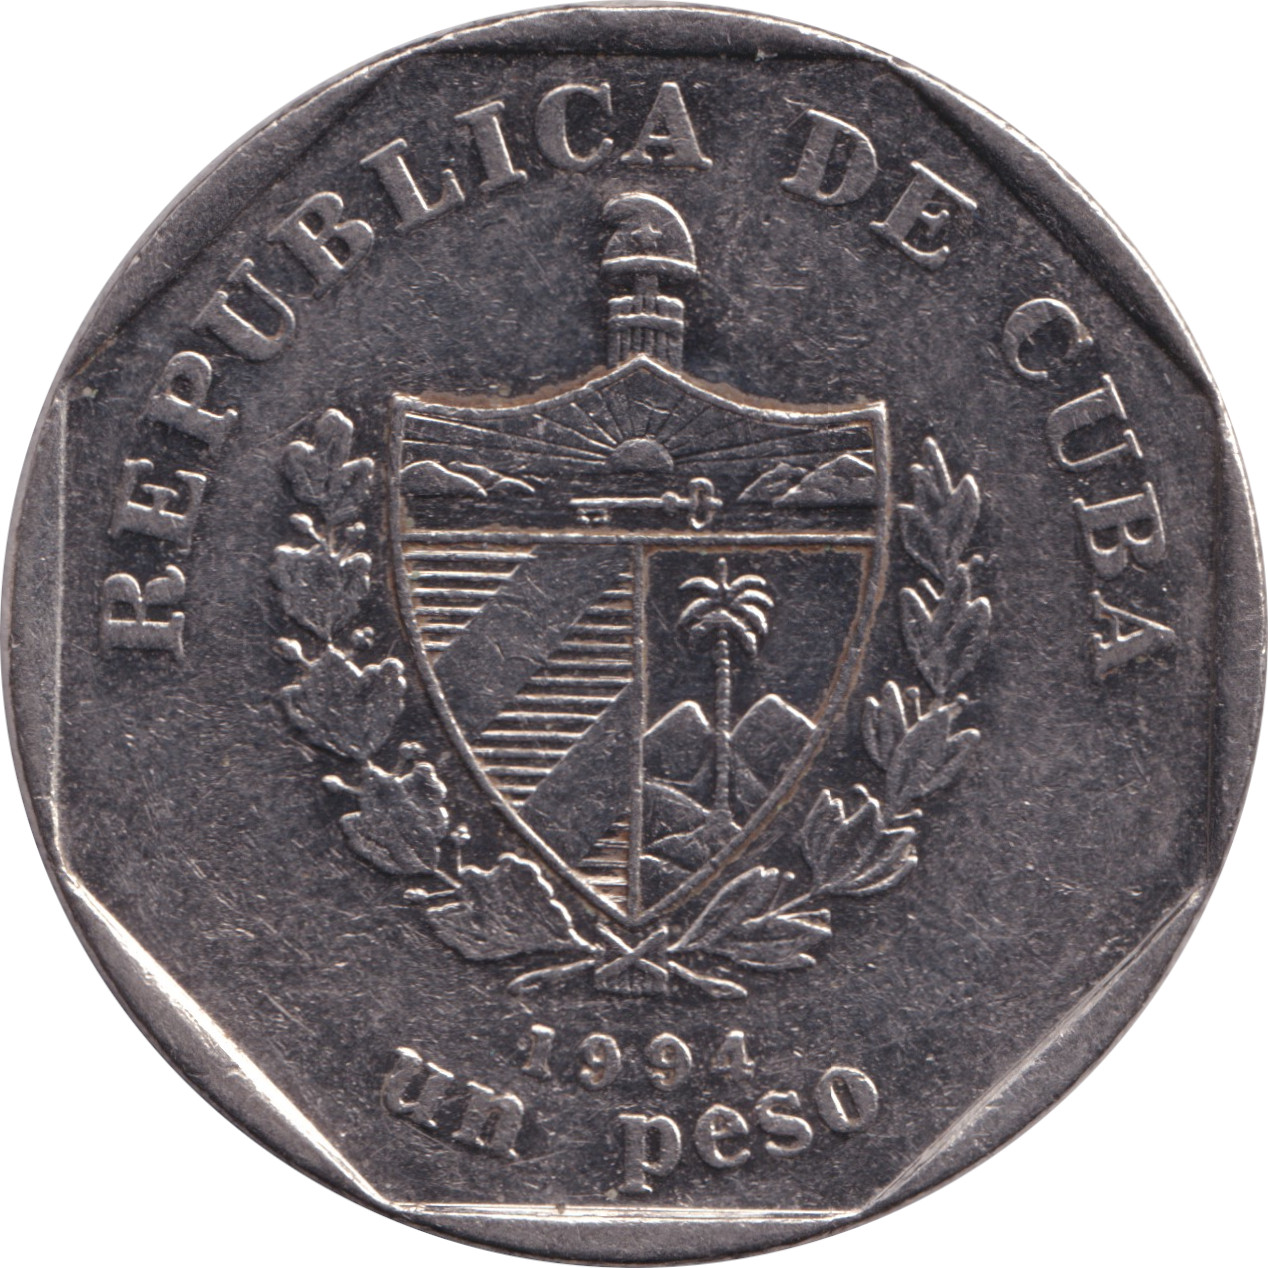 1 peso - Guama